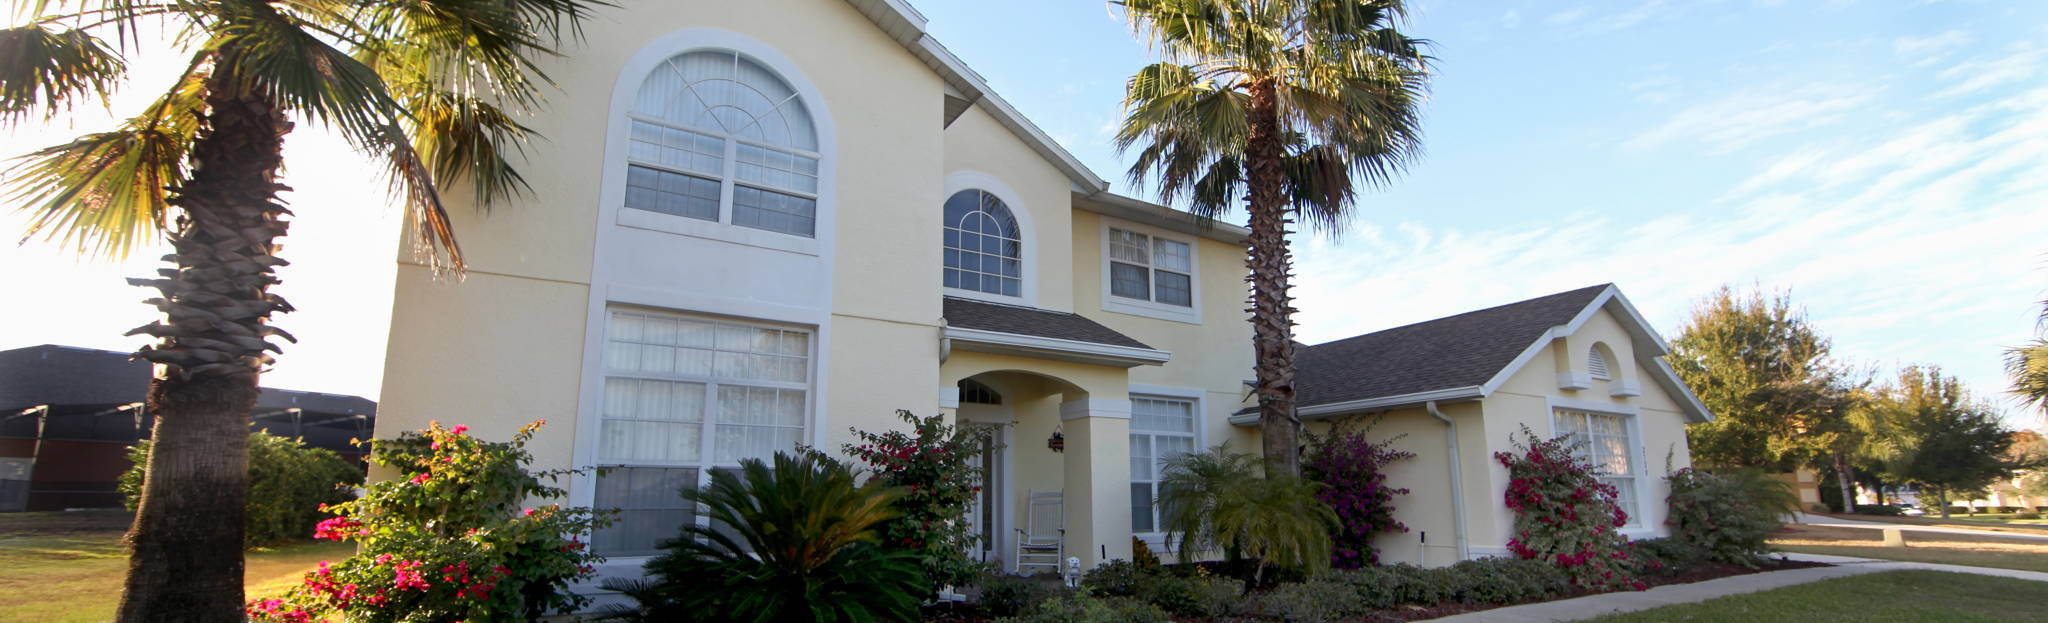 Port Charlotte Florida Homes for Sale